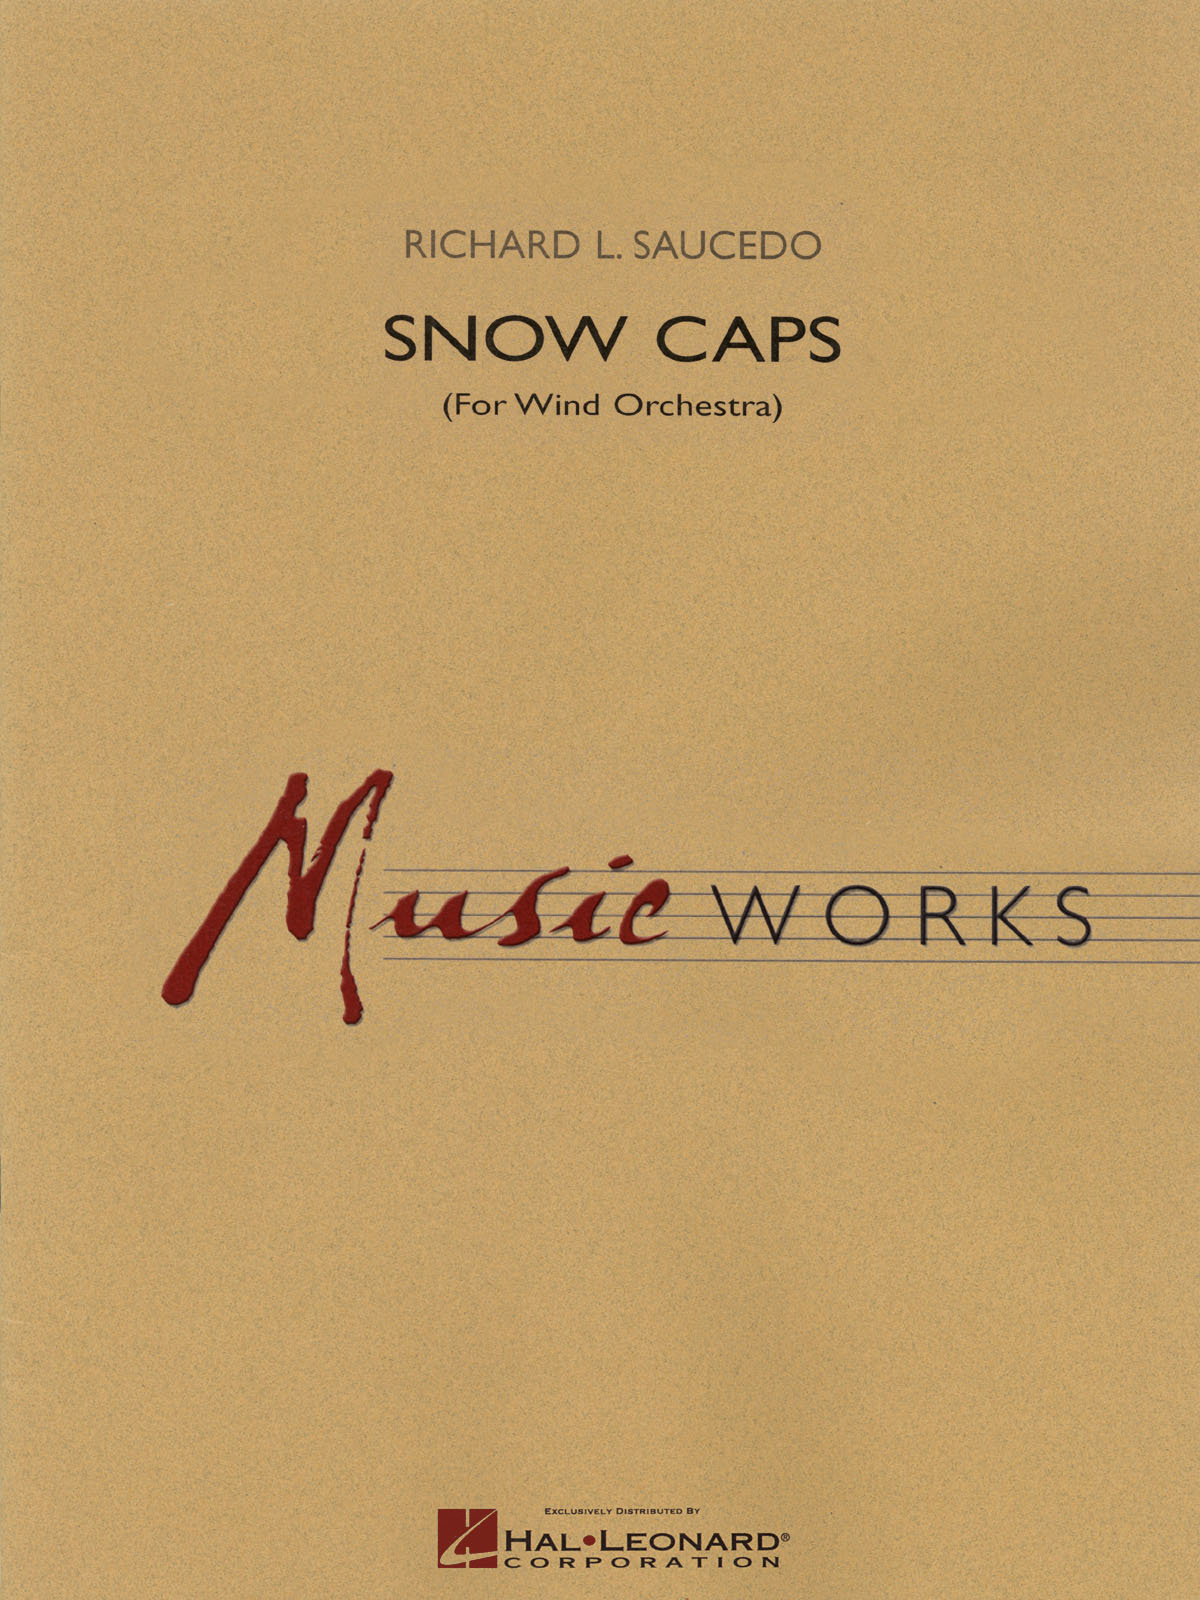 Richard L. Saucedo: Snow Caps: Concert Band: Score  Parts & Audio